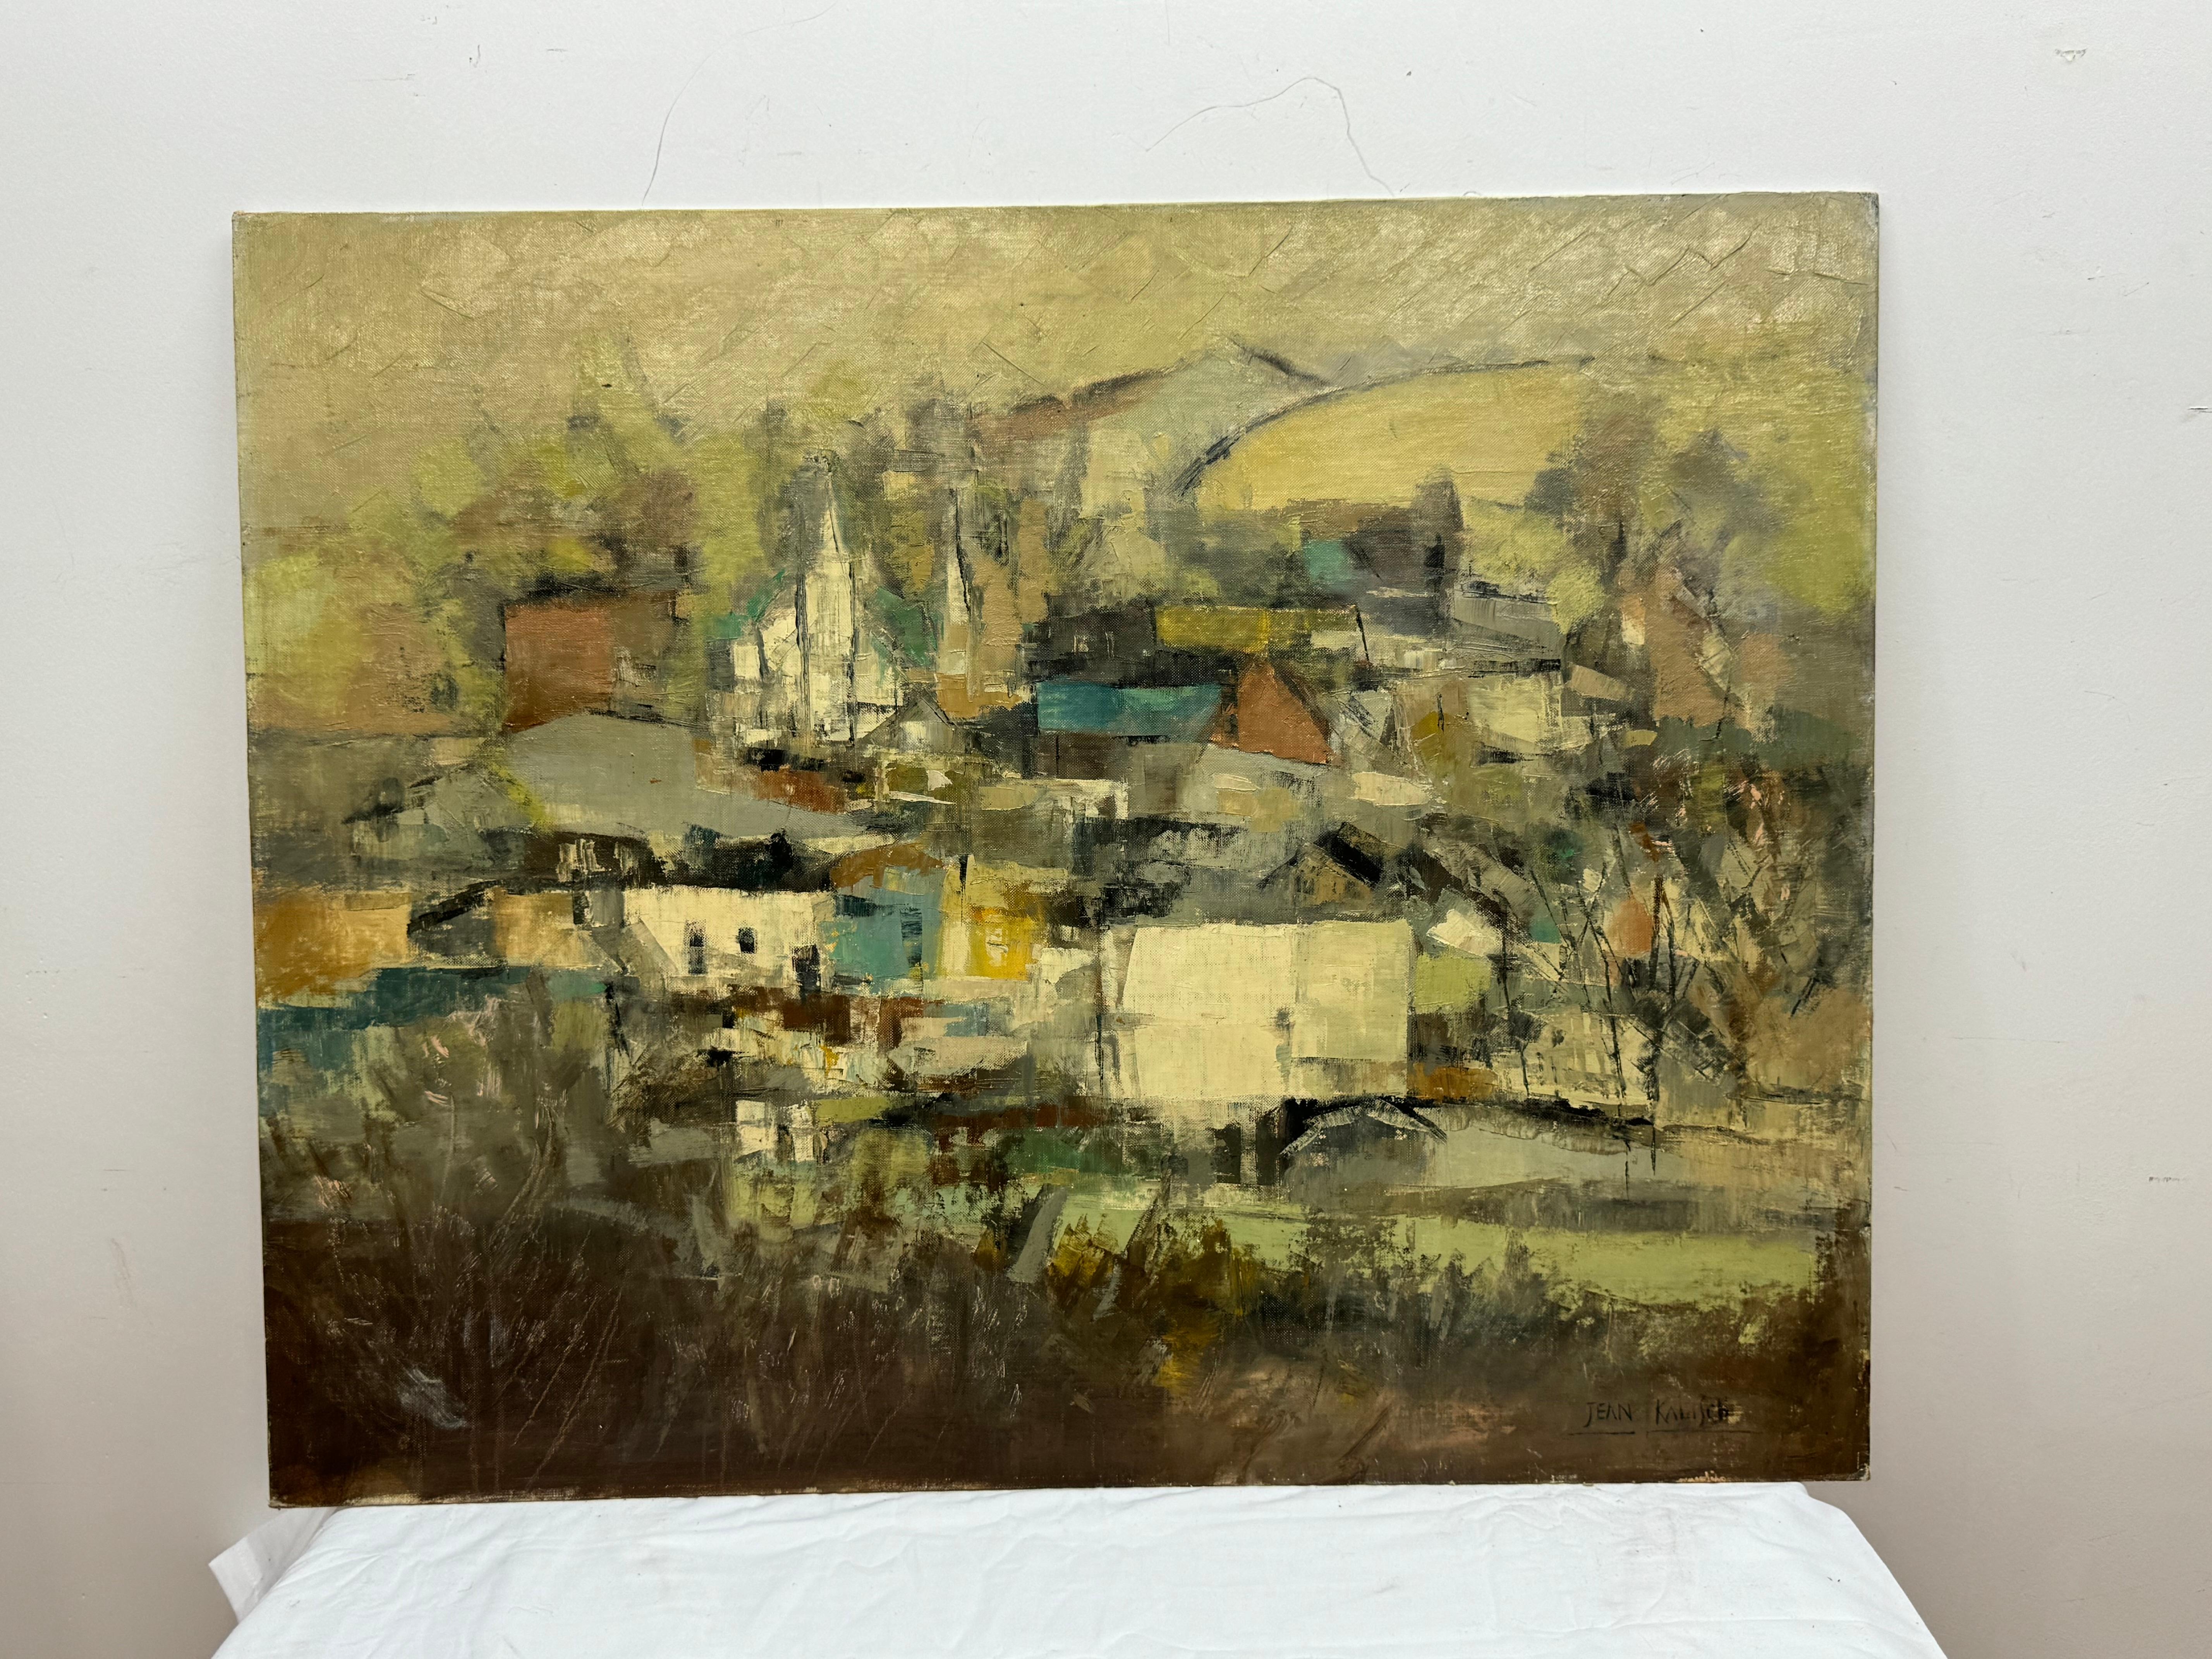 Jean Kallsch, 

Blick auf ein abstraktes Dorf mit Feldern   